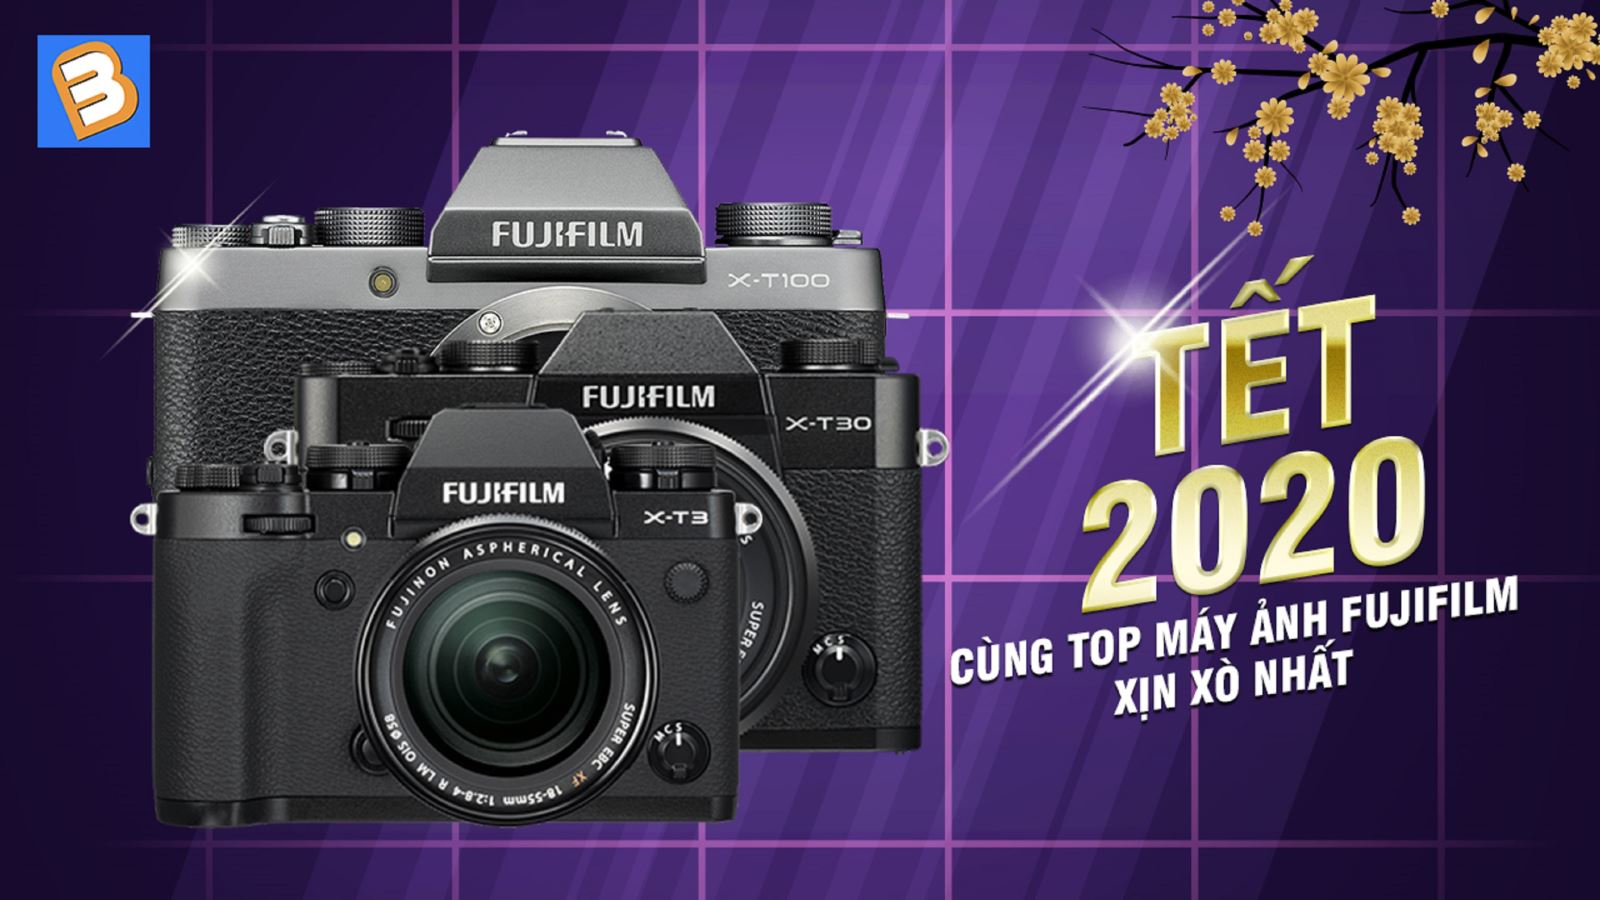 Đón Tết 2020 cùng top máy ảnh Fujifilm xịn xò nhất